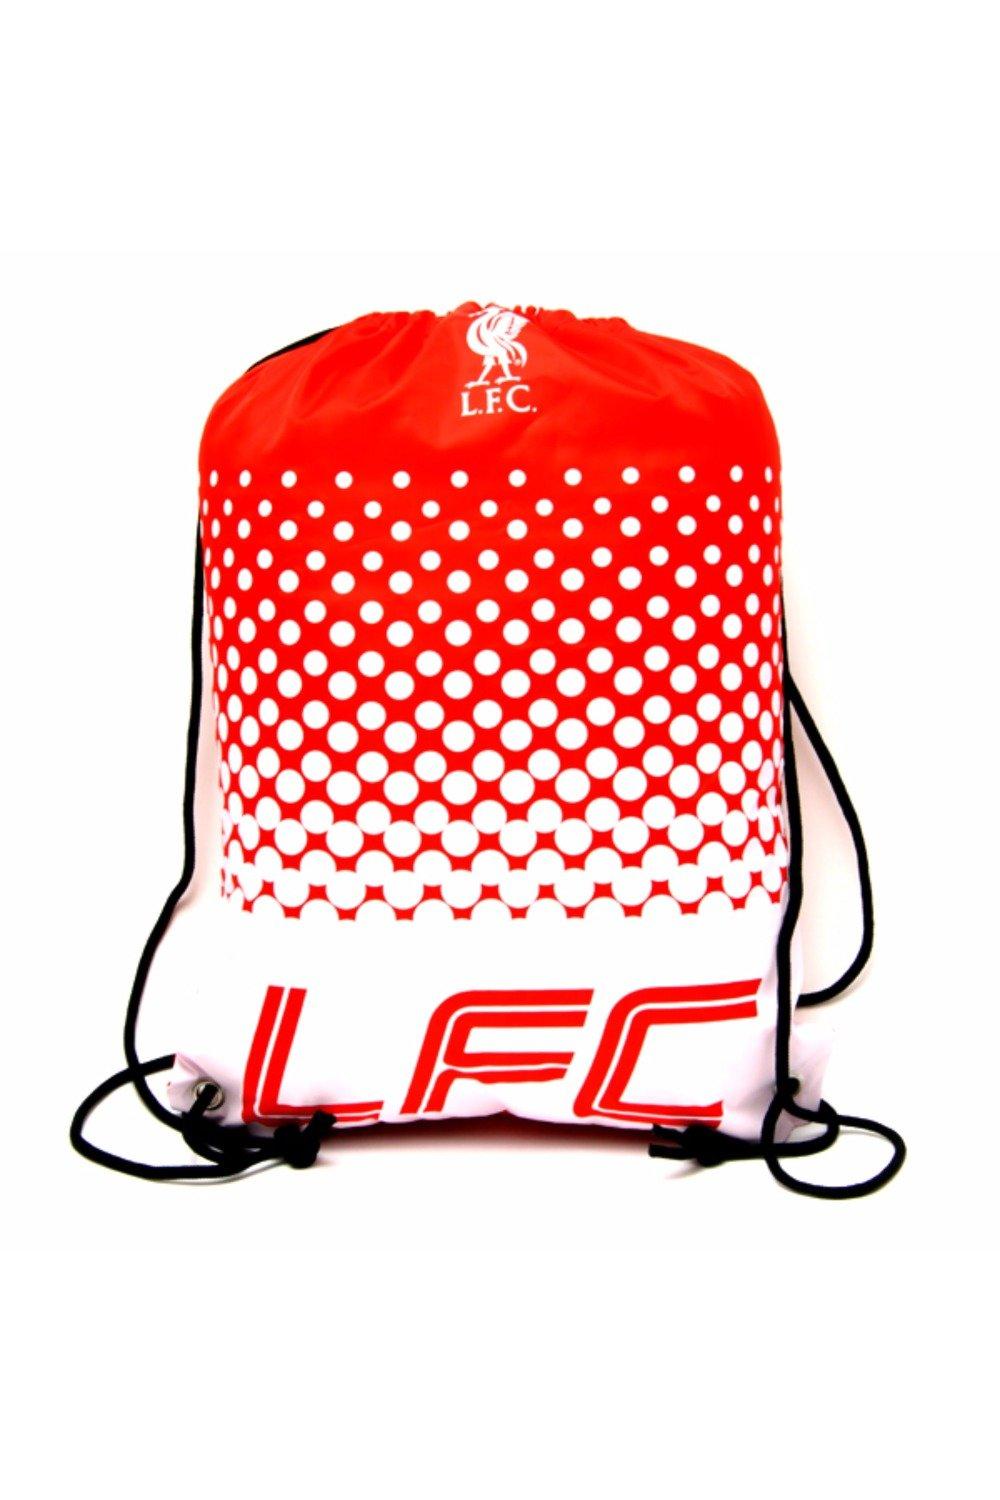 Официальная спортивная сумка Fade с футбольным гербом Liverpool FC, красный